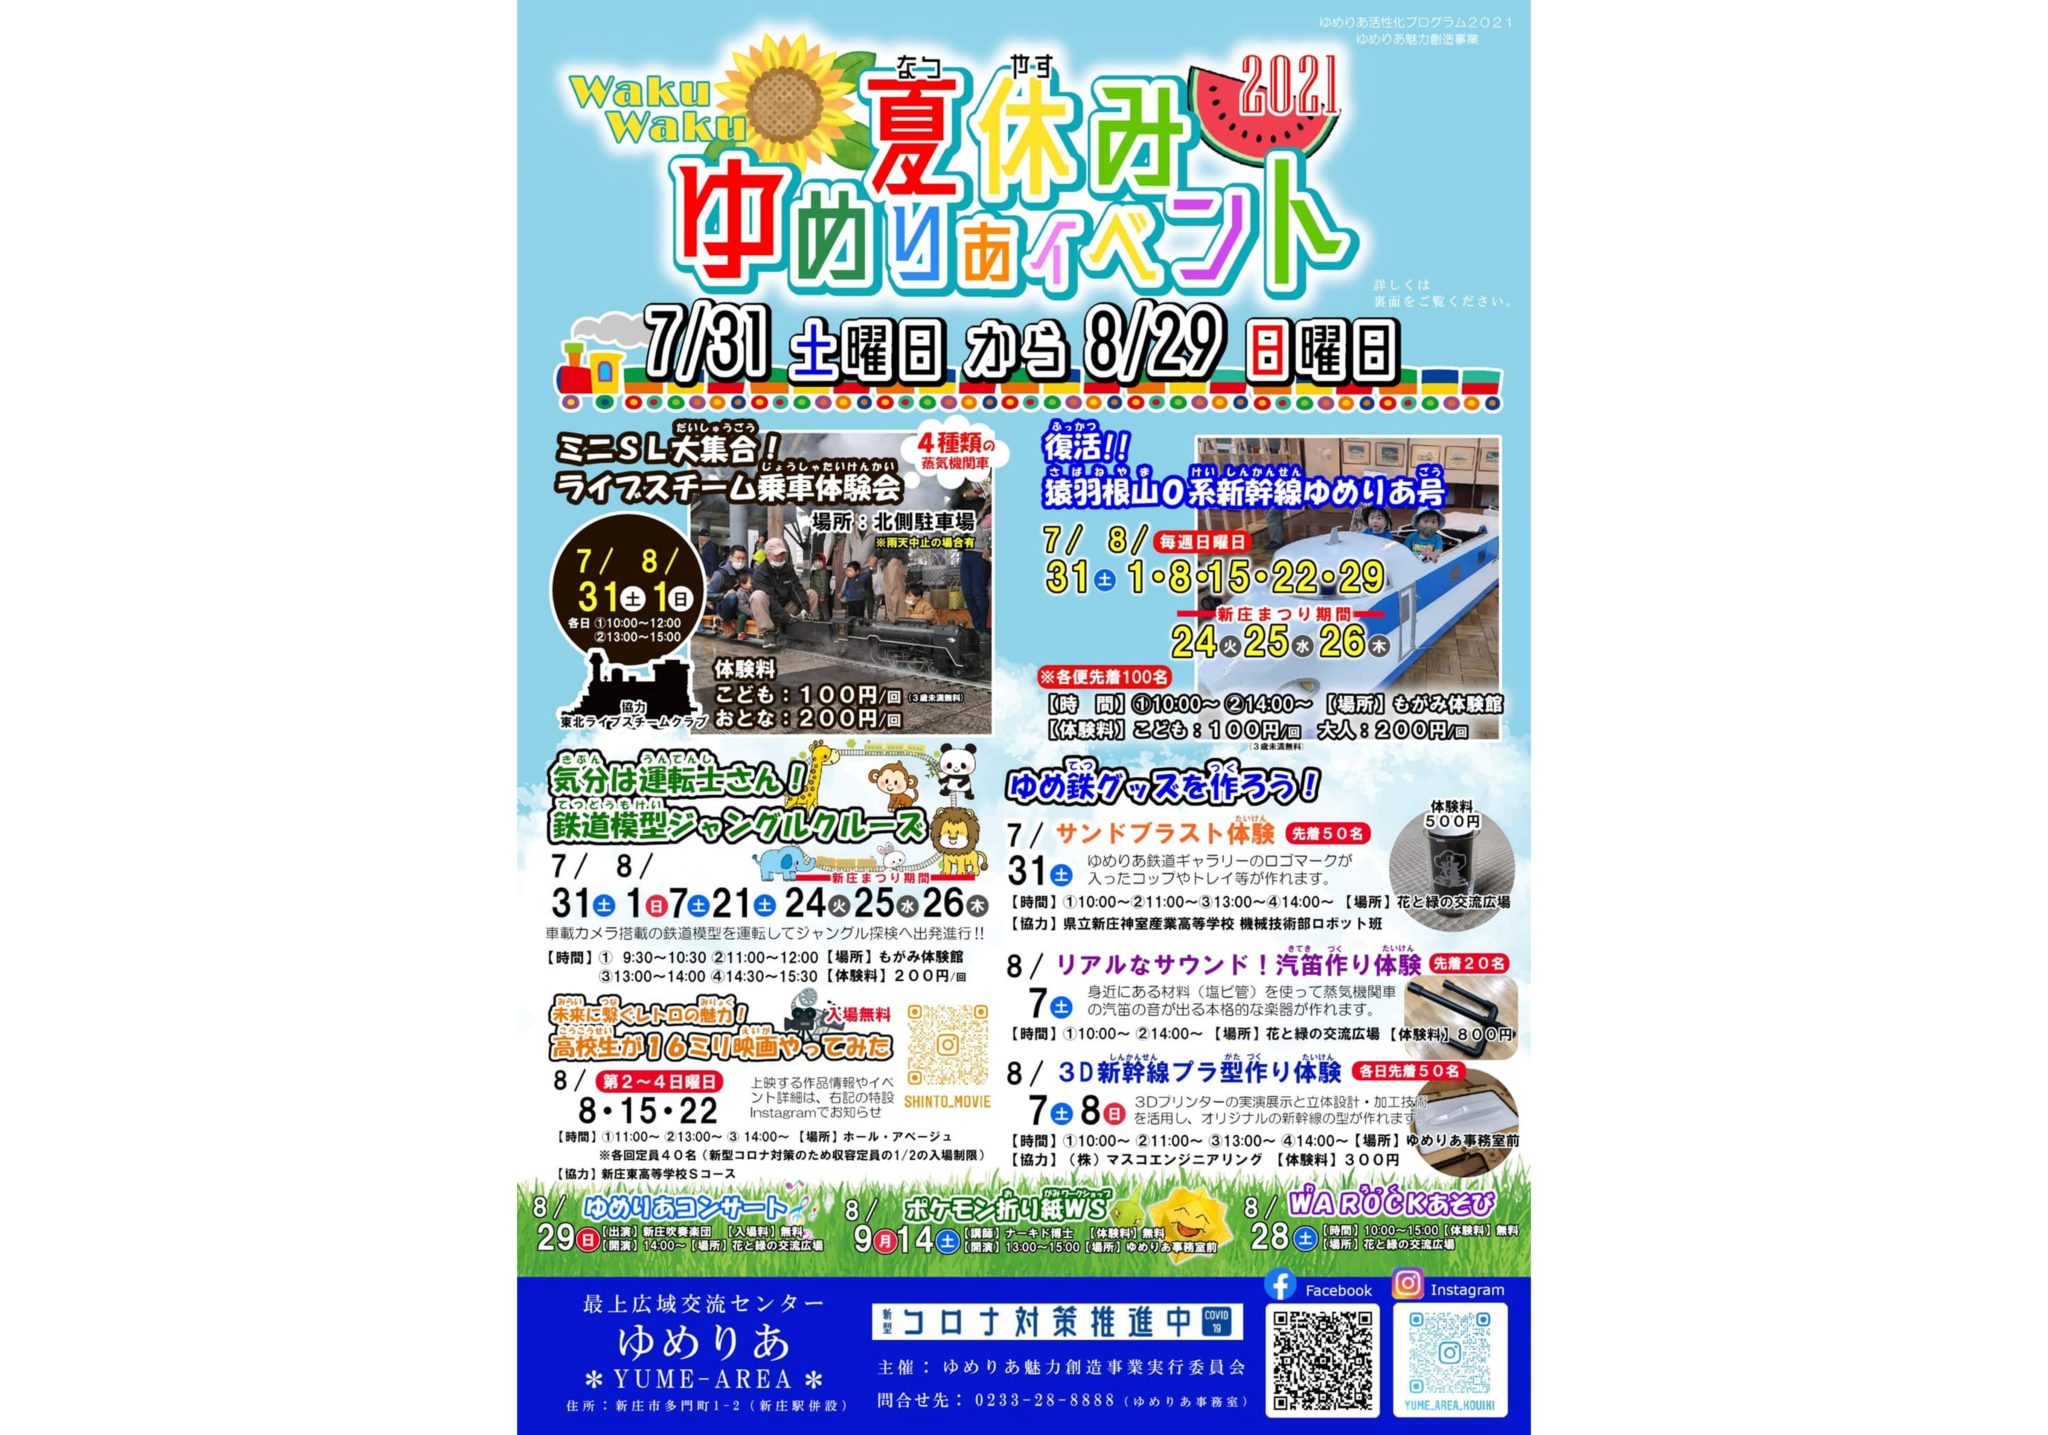 毎週更新 21年 山形県の週末イベント情報 Visit Yamagata